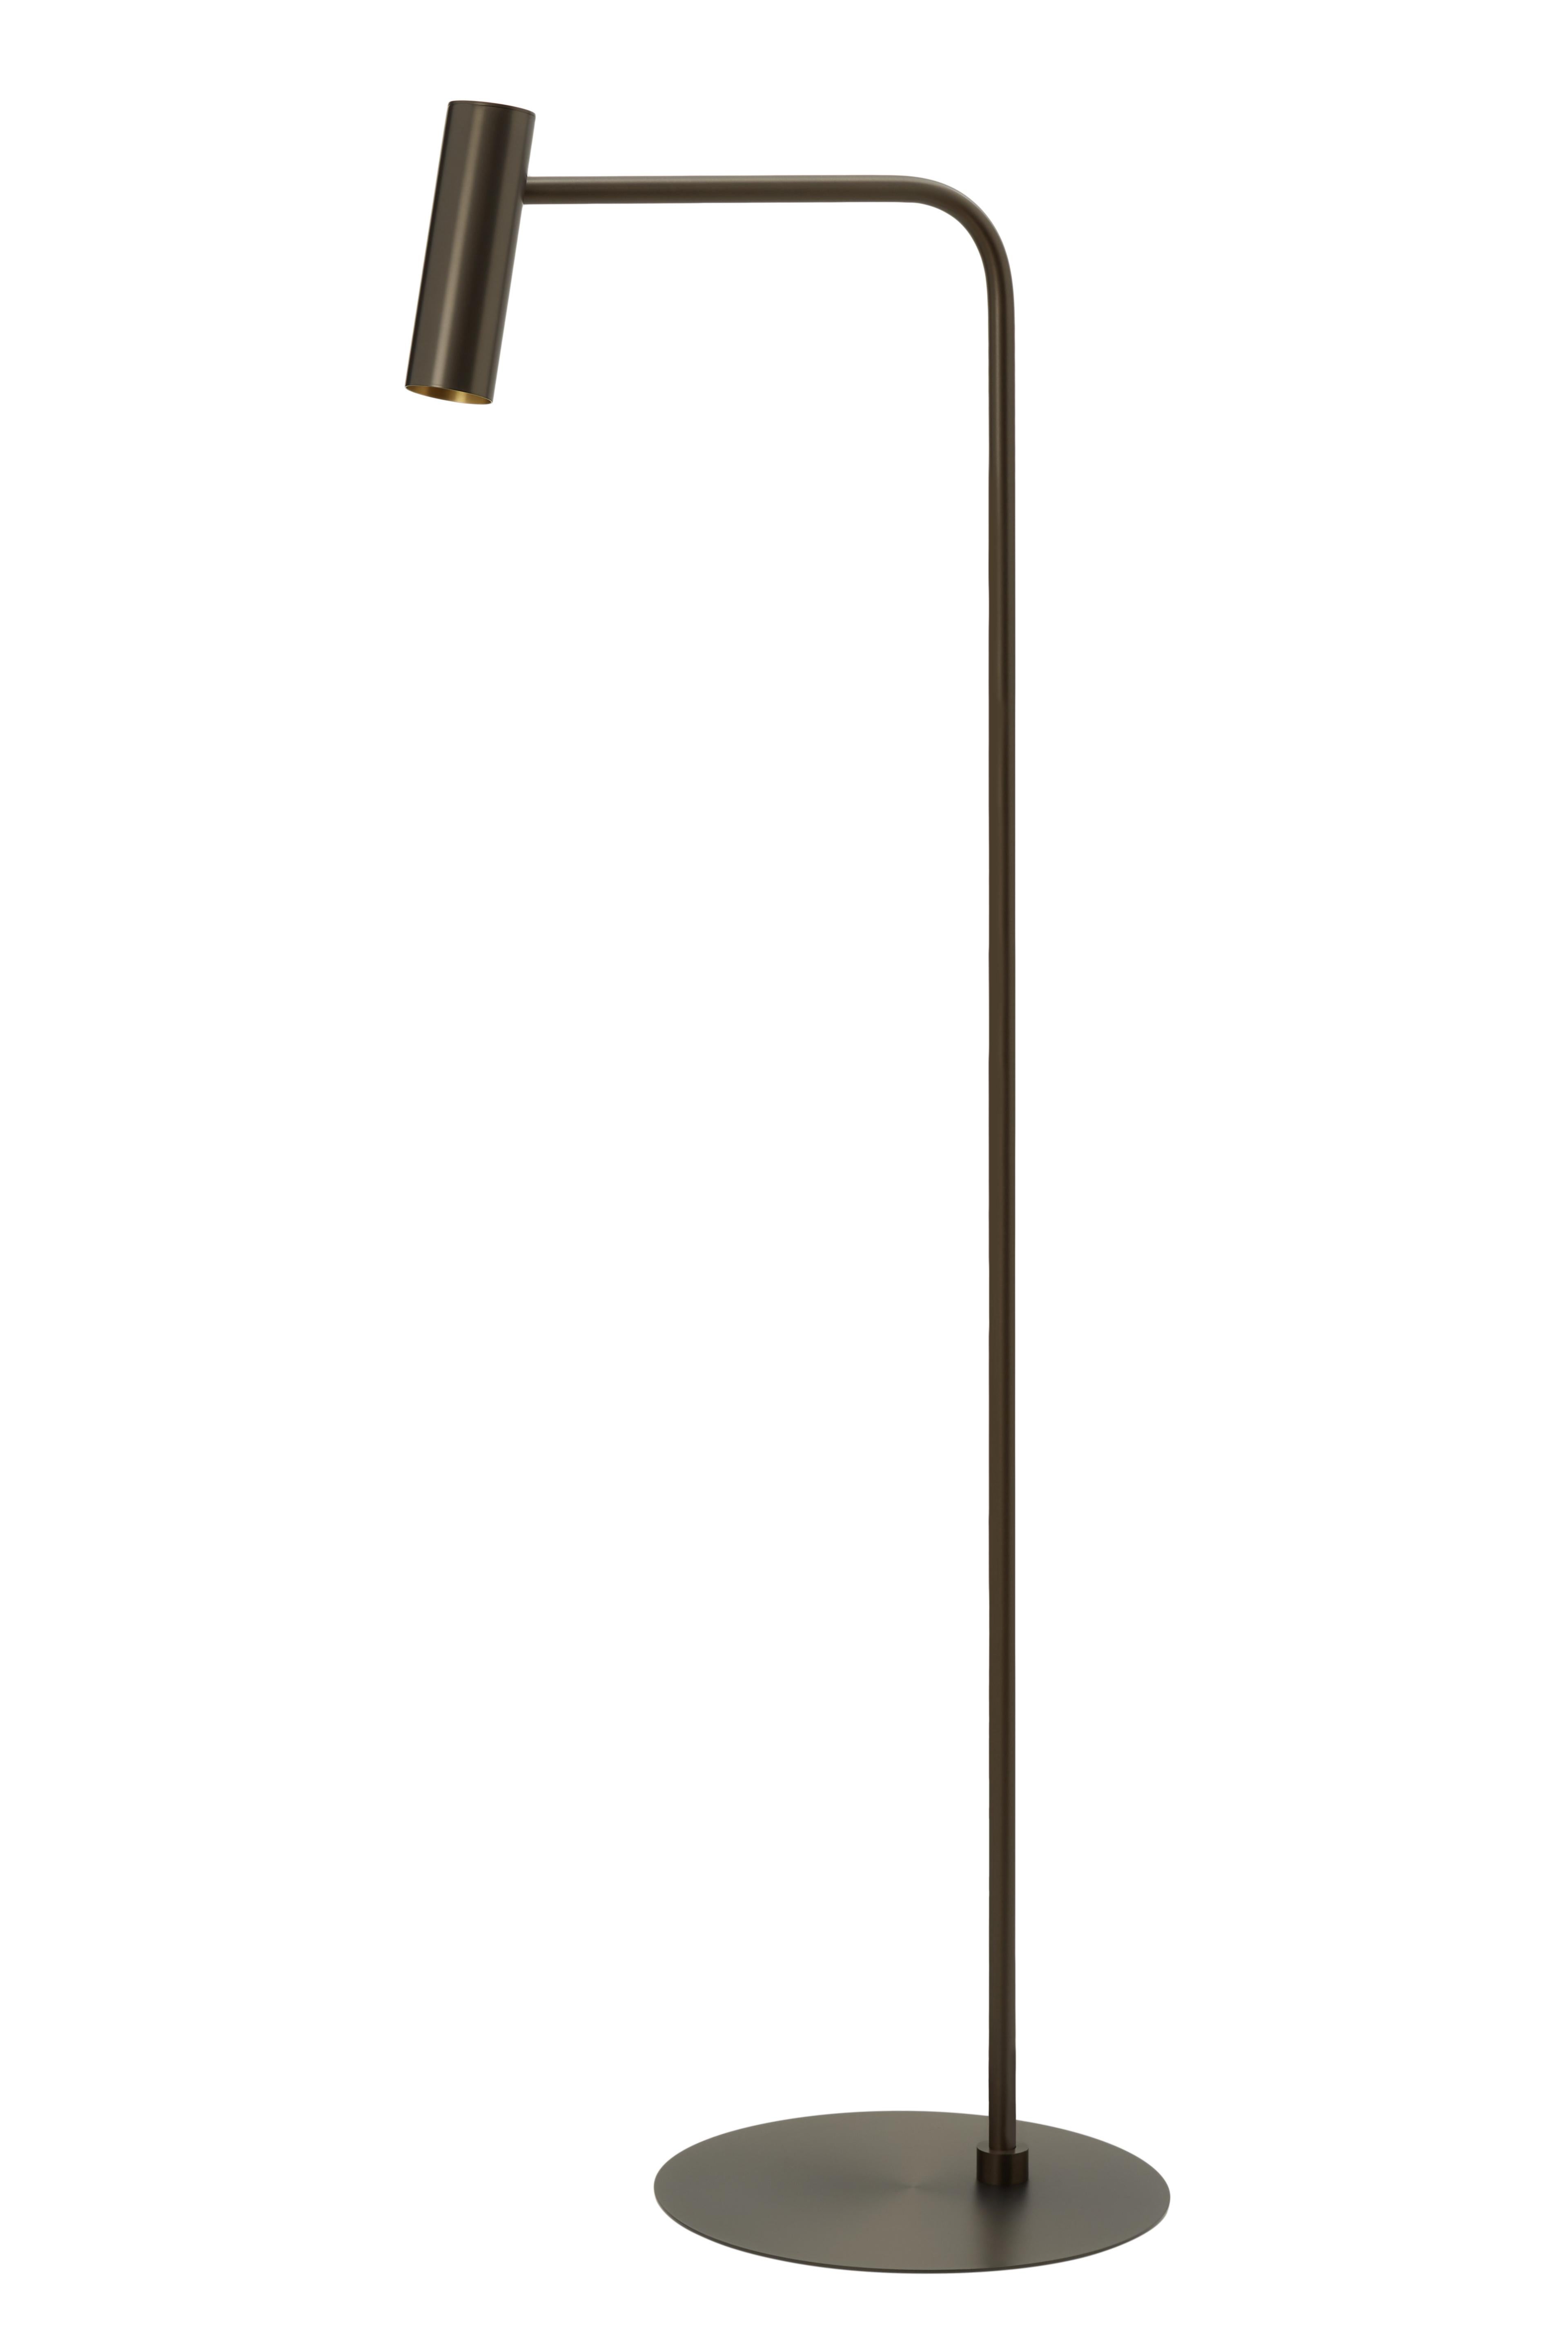 Lampadaire Heron de CTO Lighting
MATERIAL : bronze avec base en marbre calacatta viola
Également disponible en laiton satiné avec tête mobile et base en marbre noir marquina adouci.
Dimensions : H 159 x L 59 cm 

Toutes nos lampes peuvent être